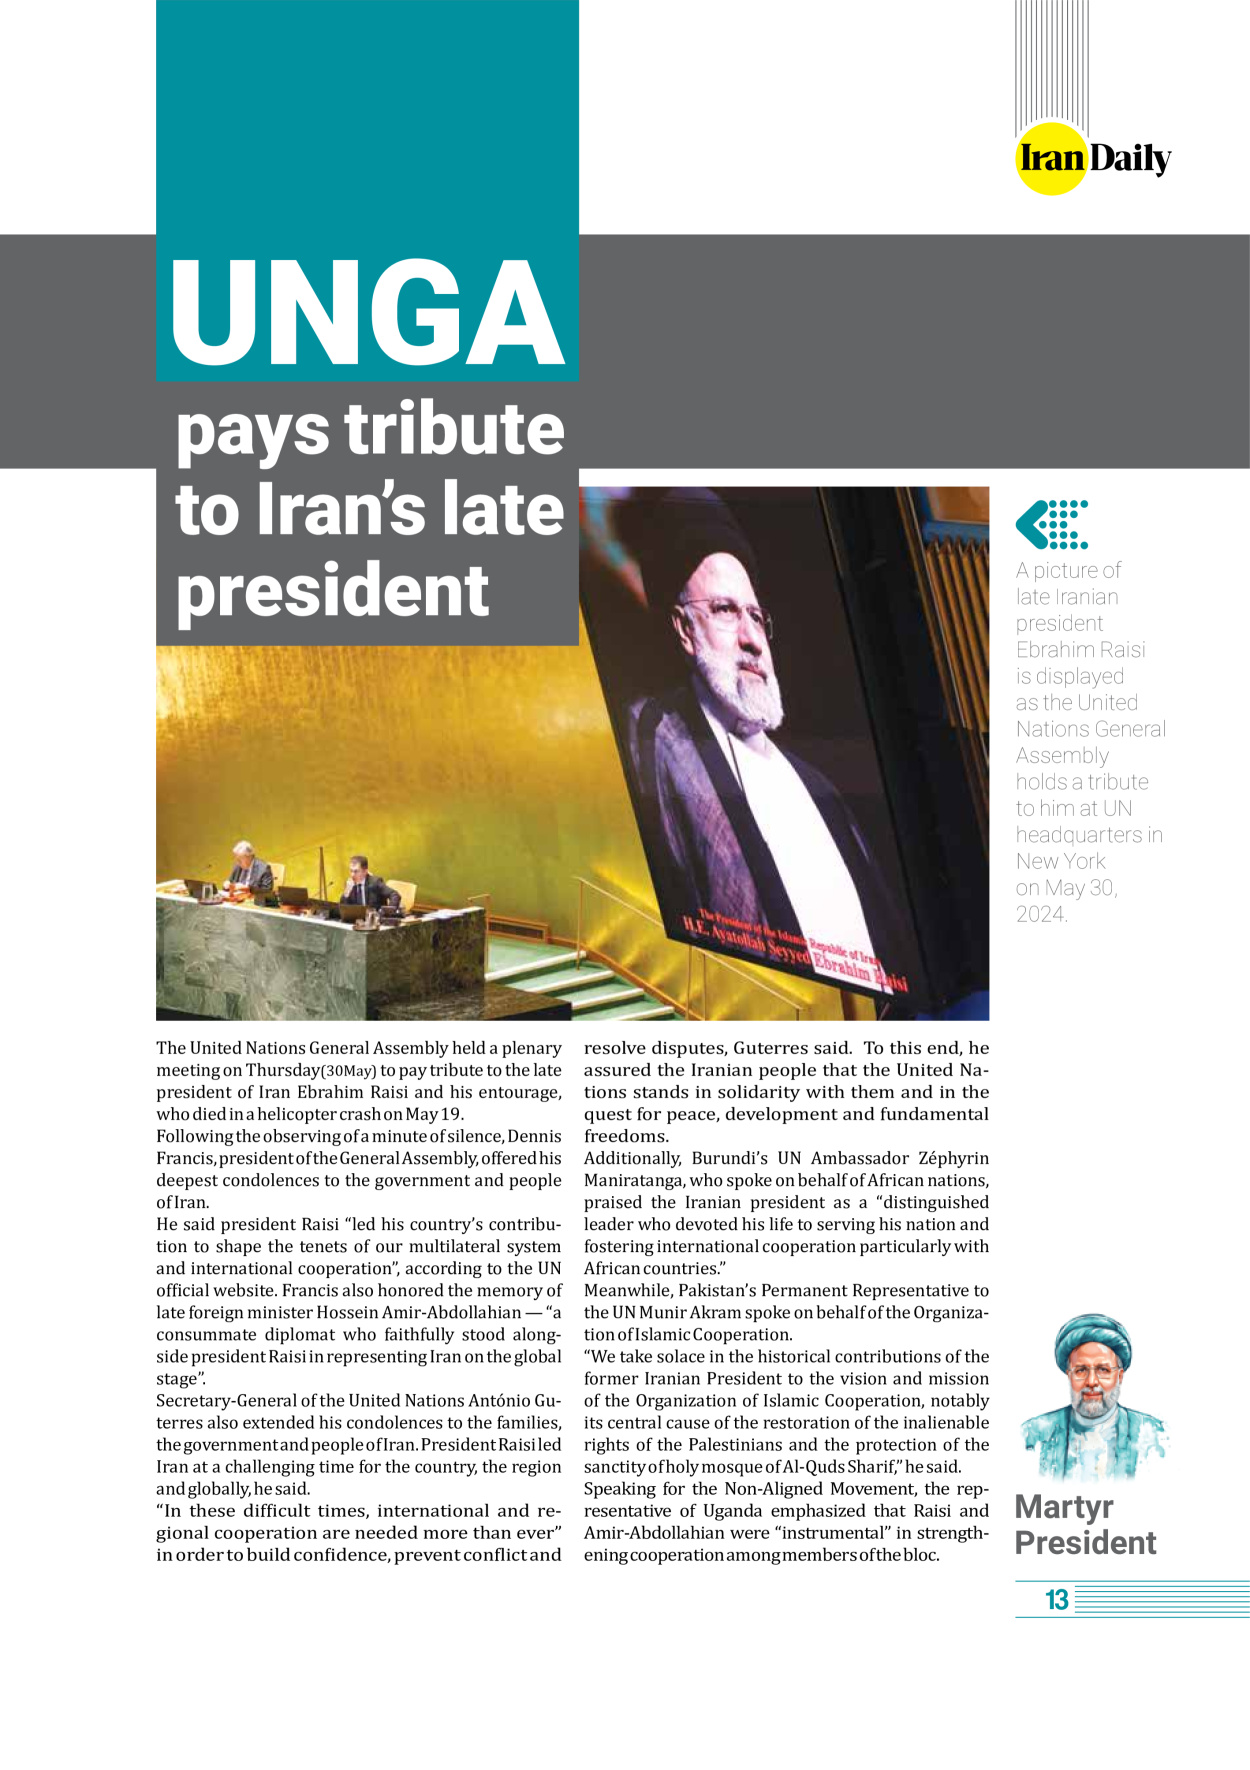 روزنامه ایران - ویژه نامه وِزه نامه چهلم شهید رییسی( انگلیسی) - ۱۷ تیر ۱۴۰۳ - صفحه ۱۳